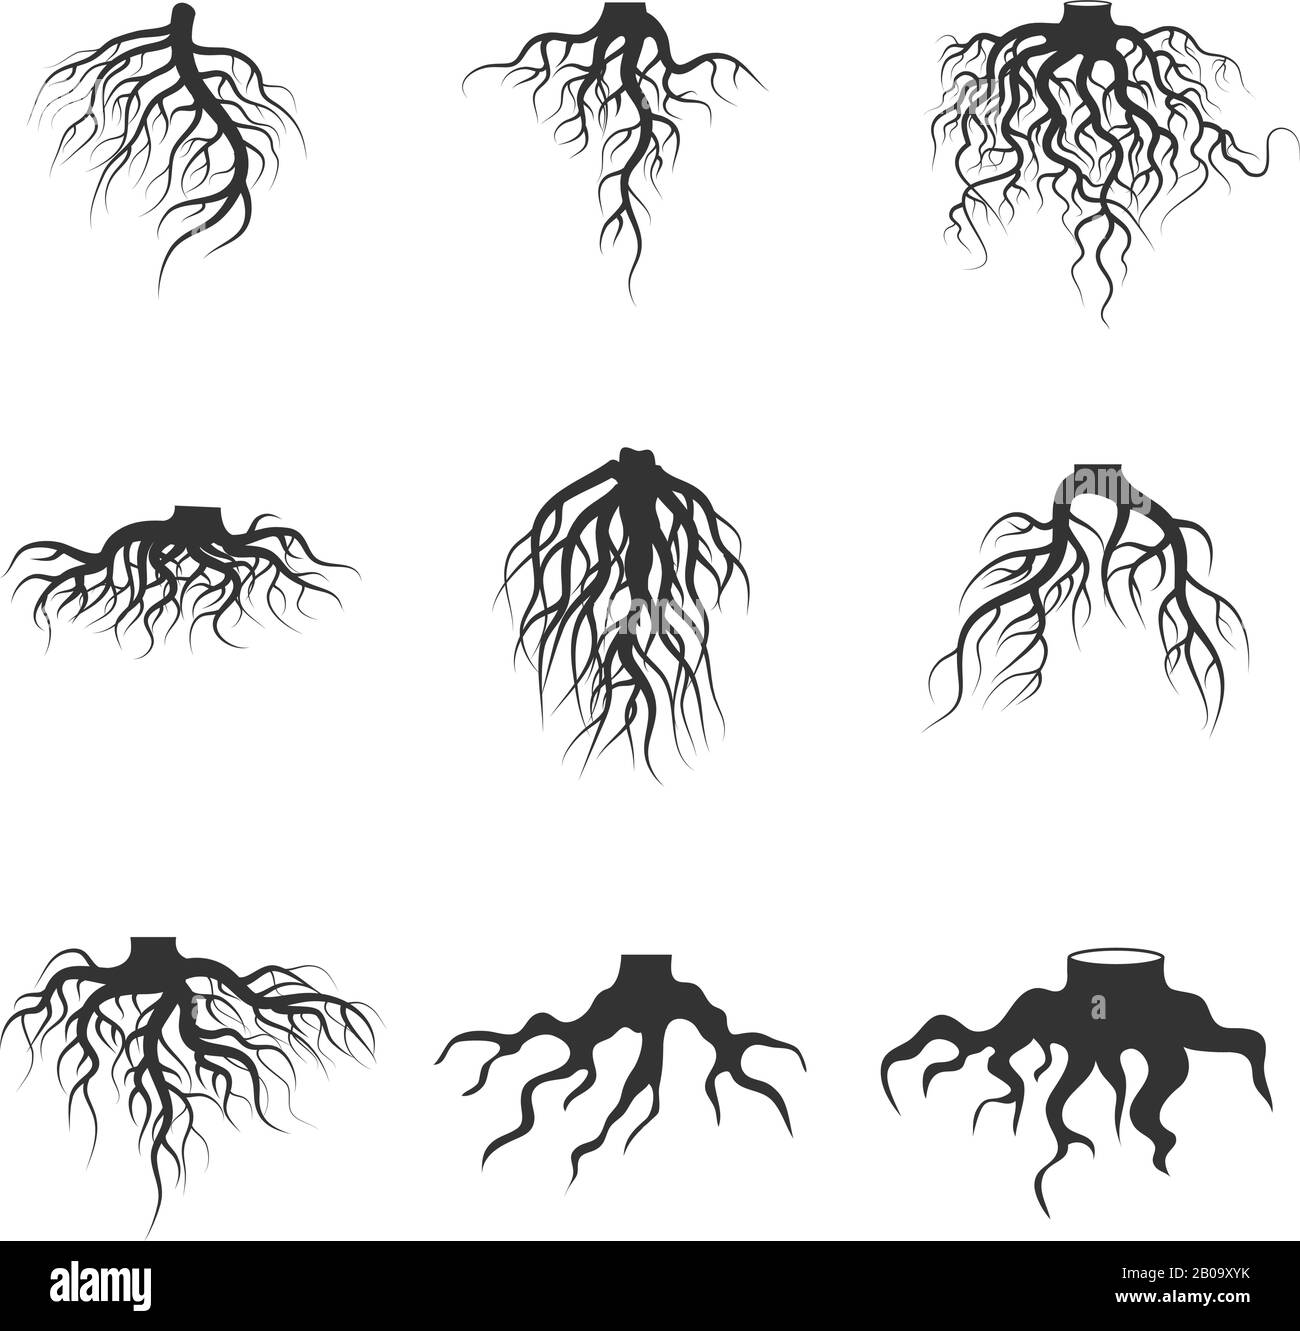 Baum und Pflanzen unterirdische Wurzeln Vektor-Satz. Baumwurzel schwarz. Abbildung der Silhouettenwurzel der Pflanzen Stock Vektor